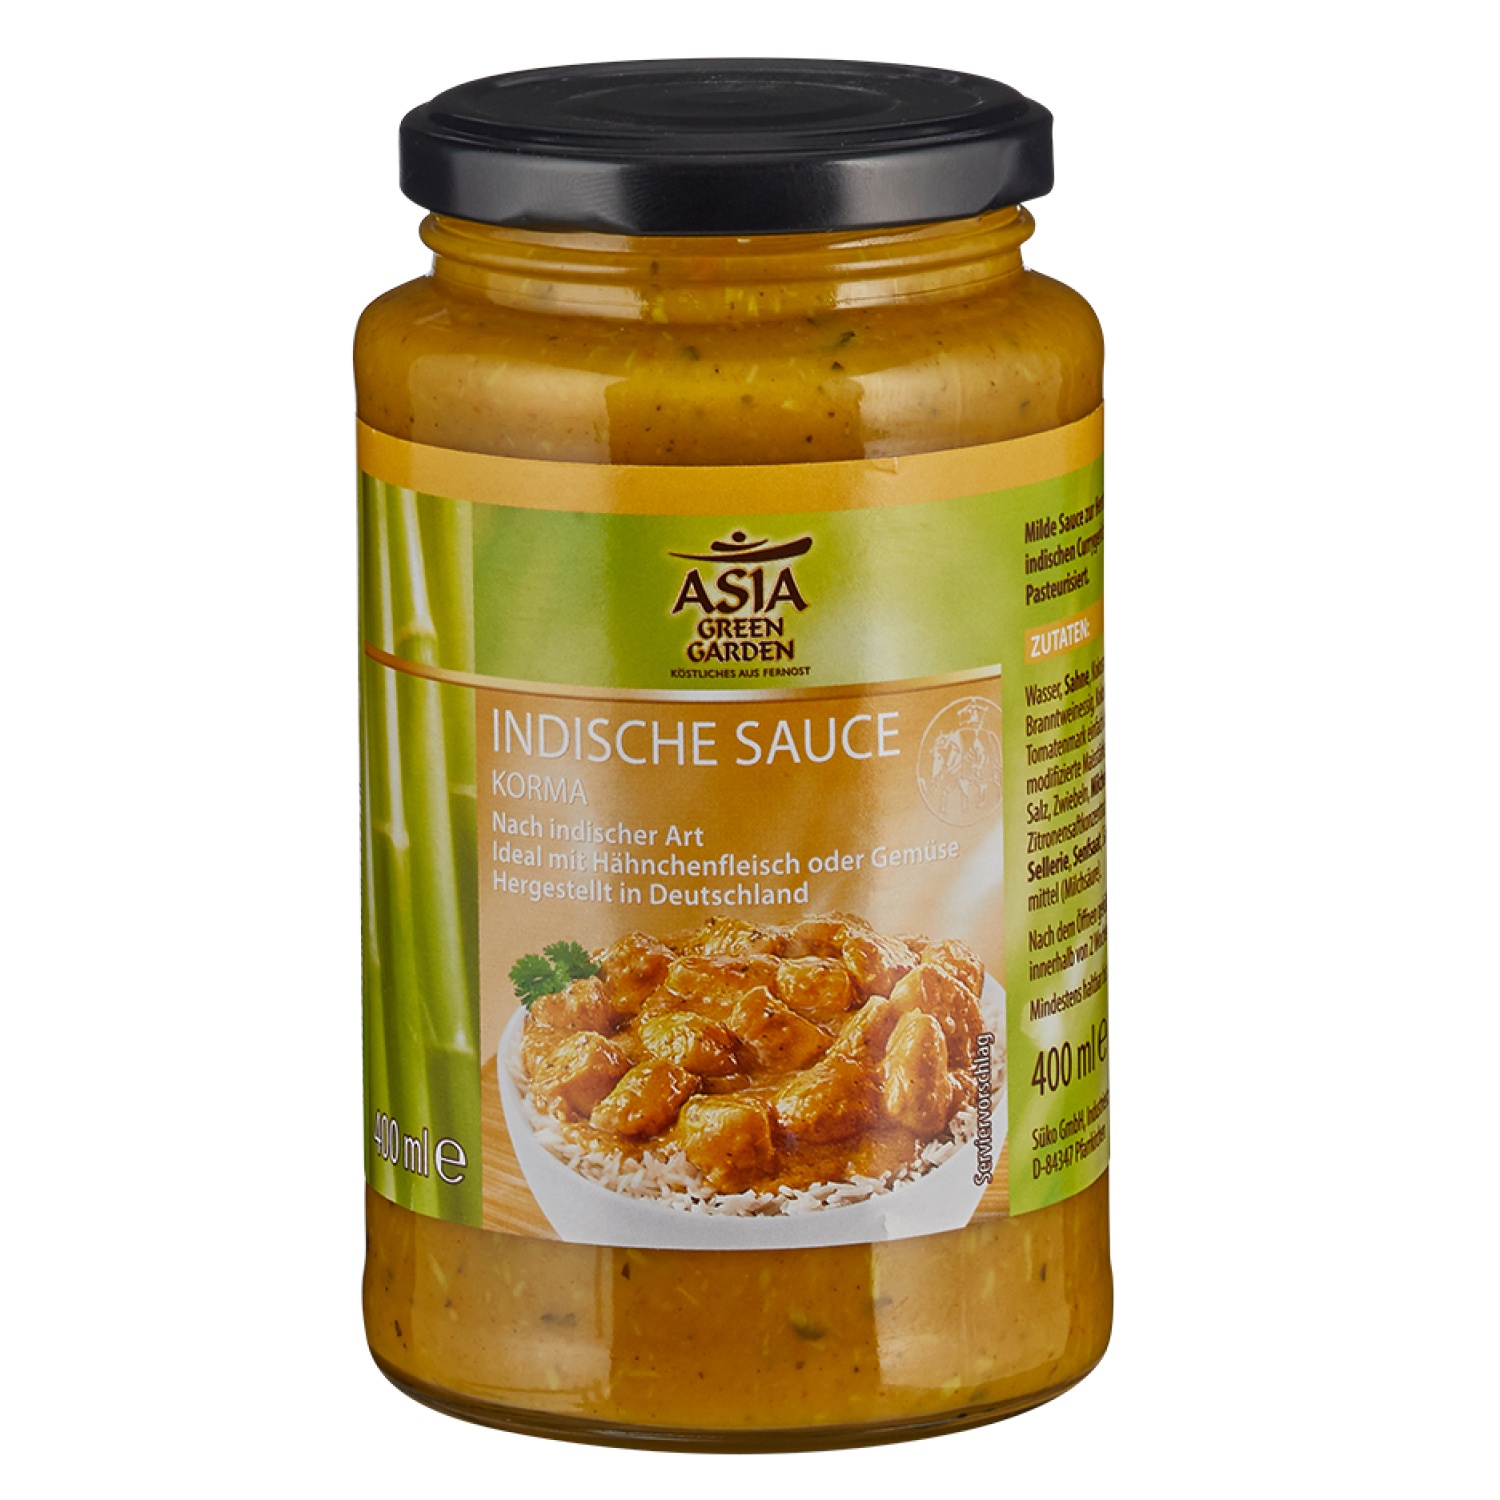 ASIA GREEN GARDEN Indische Sauce 400 ml